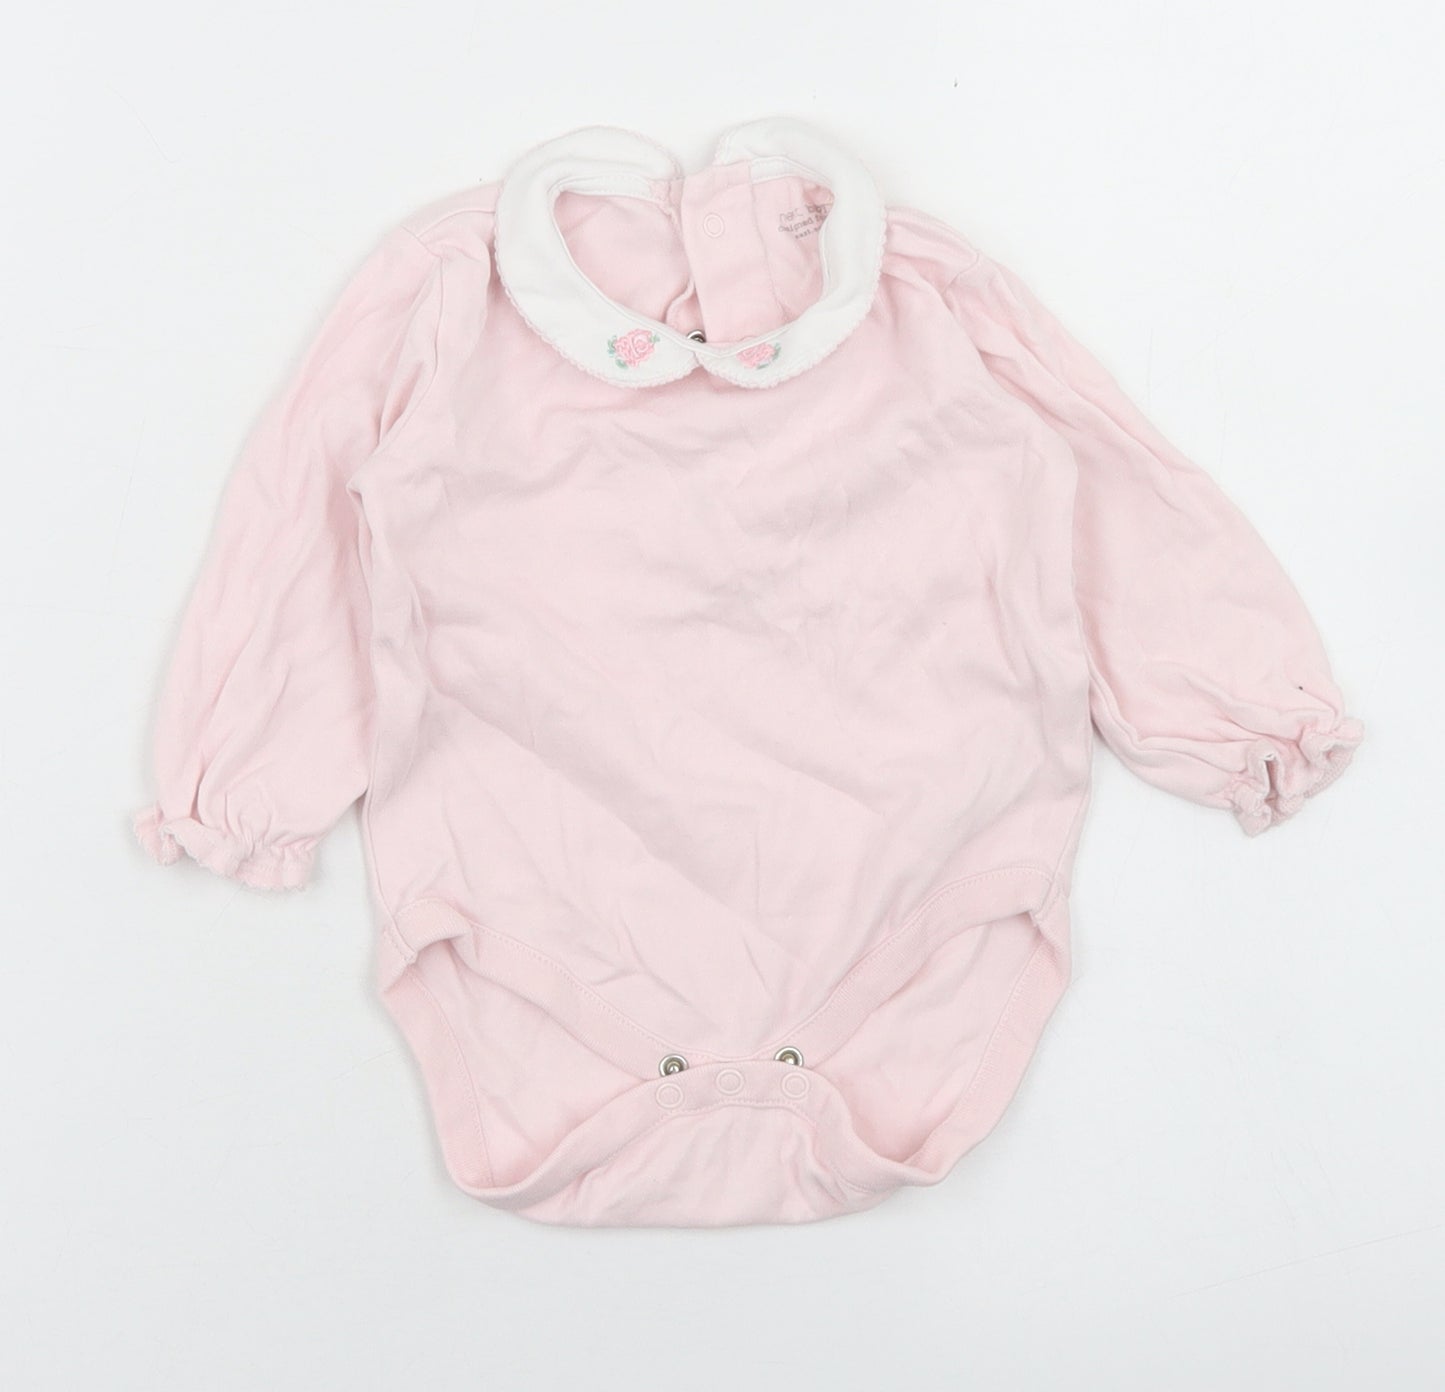 NEXT Girls Pink  Cotton Romper One-Piece Size 6-9 Months  Snap